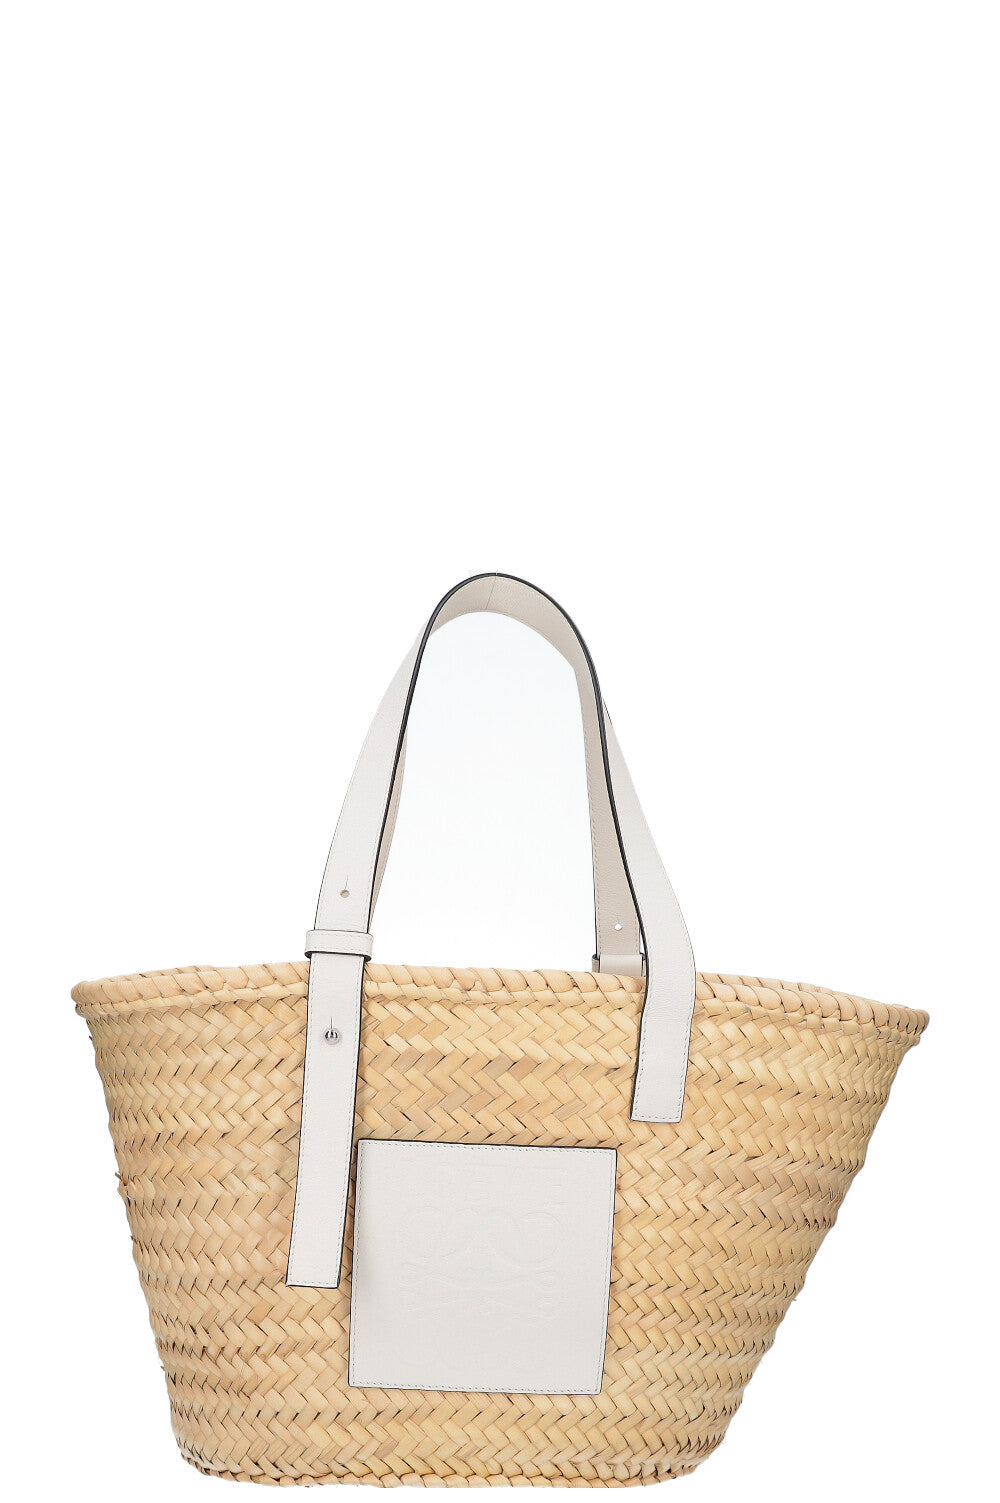 Loewe Palm Basket Natural White